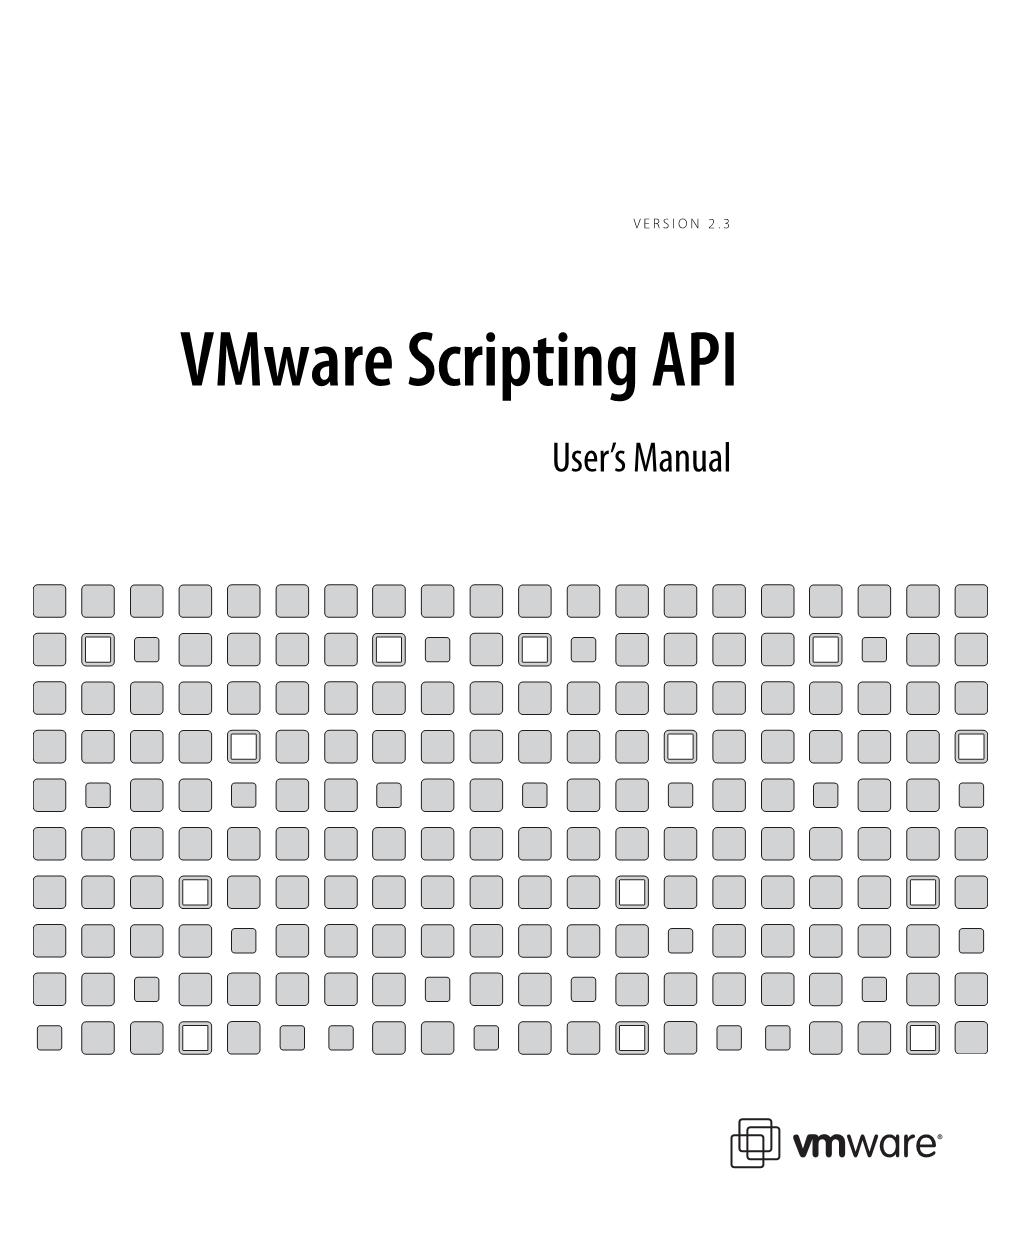 Vmware Scripting API User's Manual